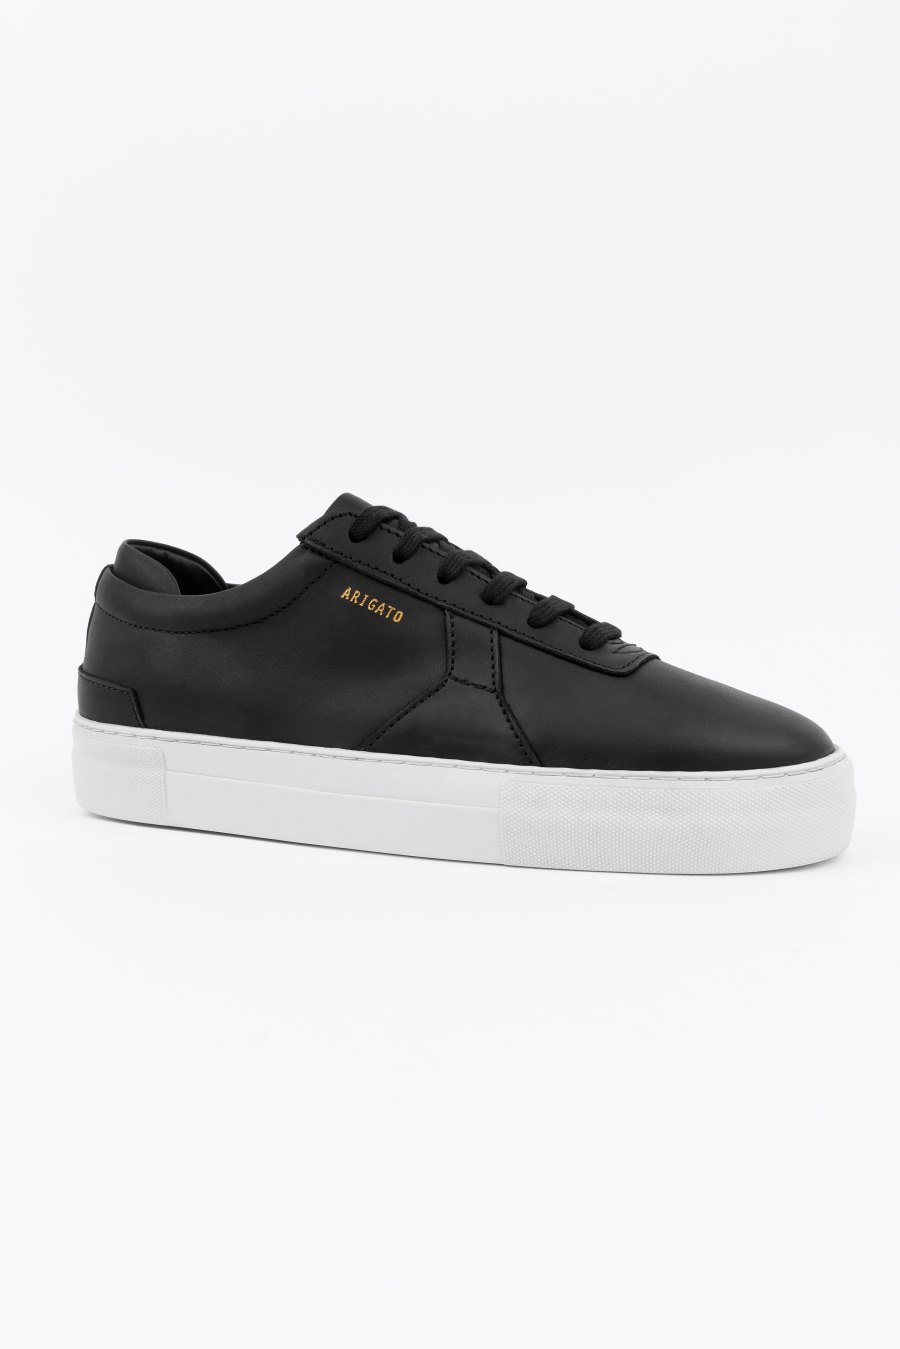 Black Axel Arigato Platform Sneakers Canada | CA4228-69